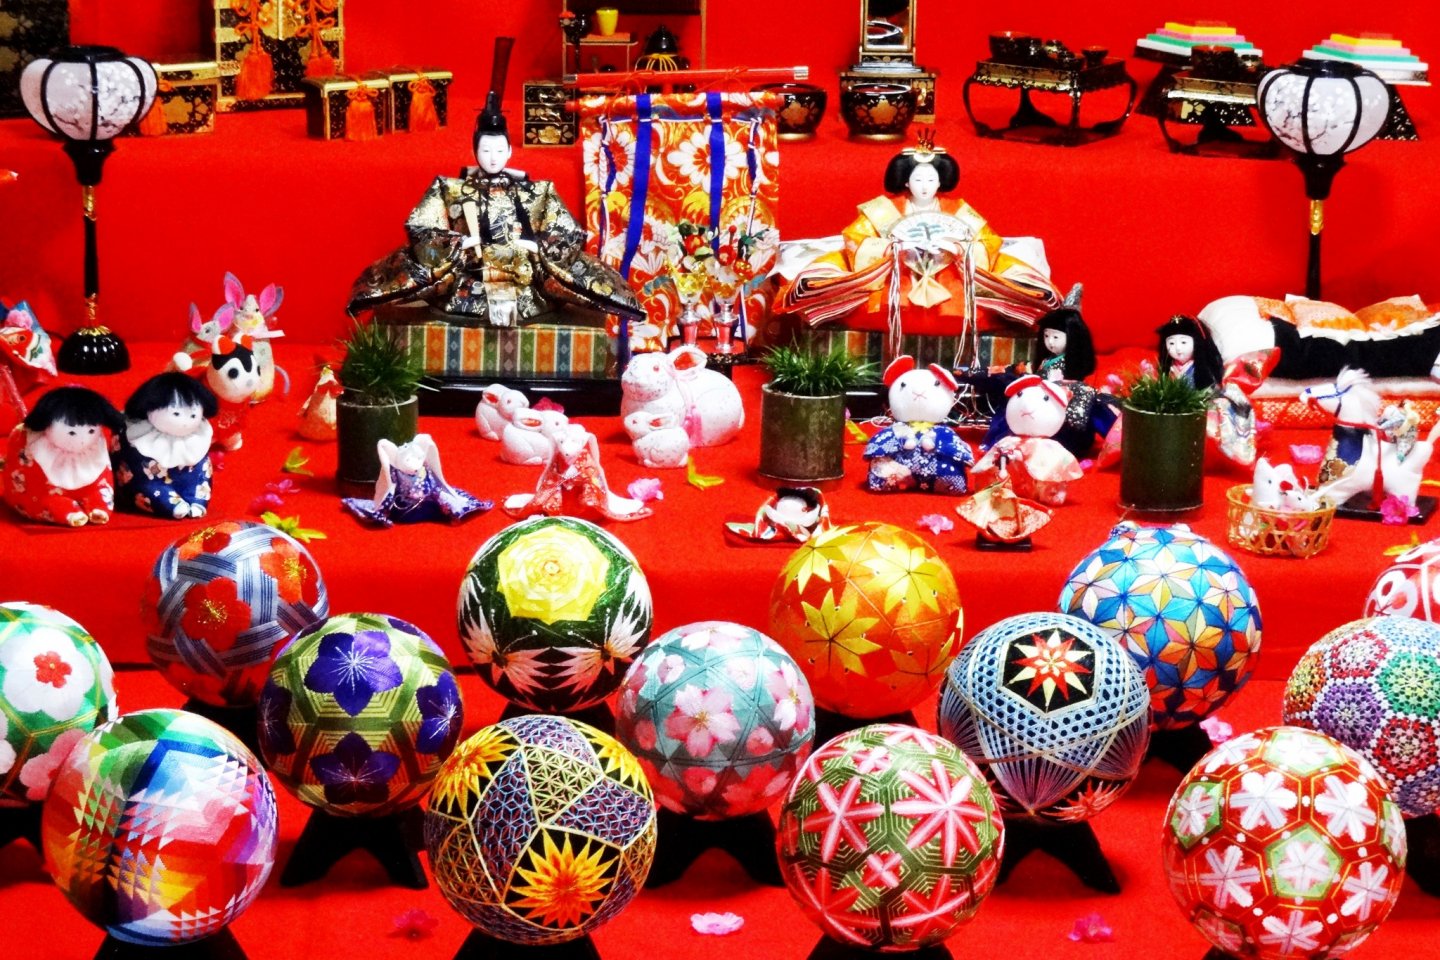 A display of Hina dolls and woven temari